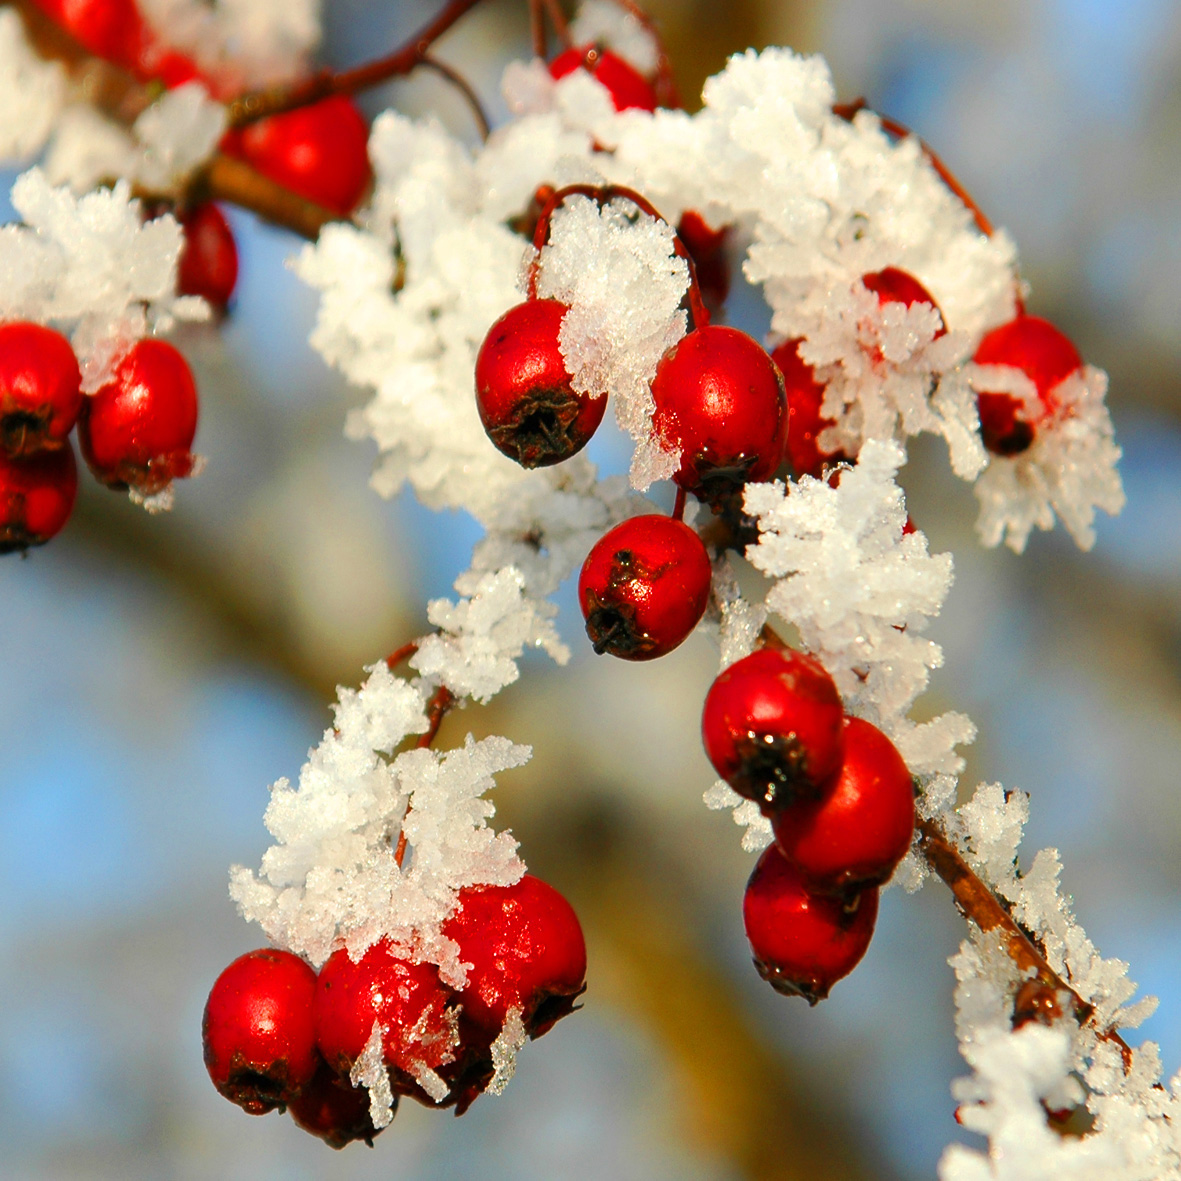 NNR-berries and frost-Steve Worwood-DSC_0079-square crop.jpg